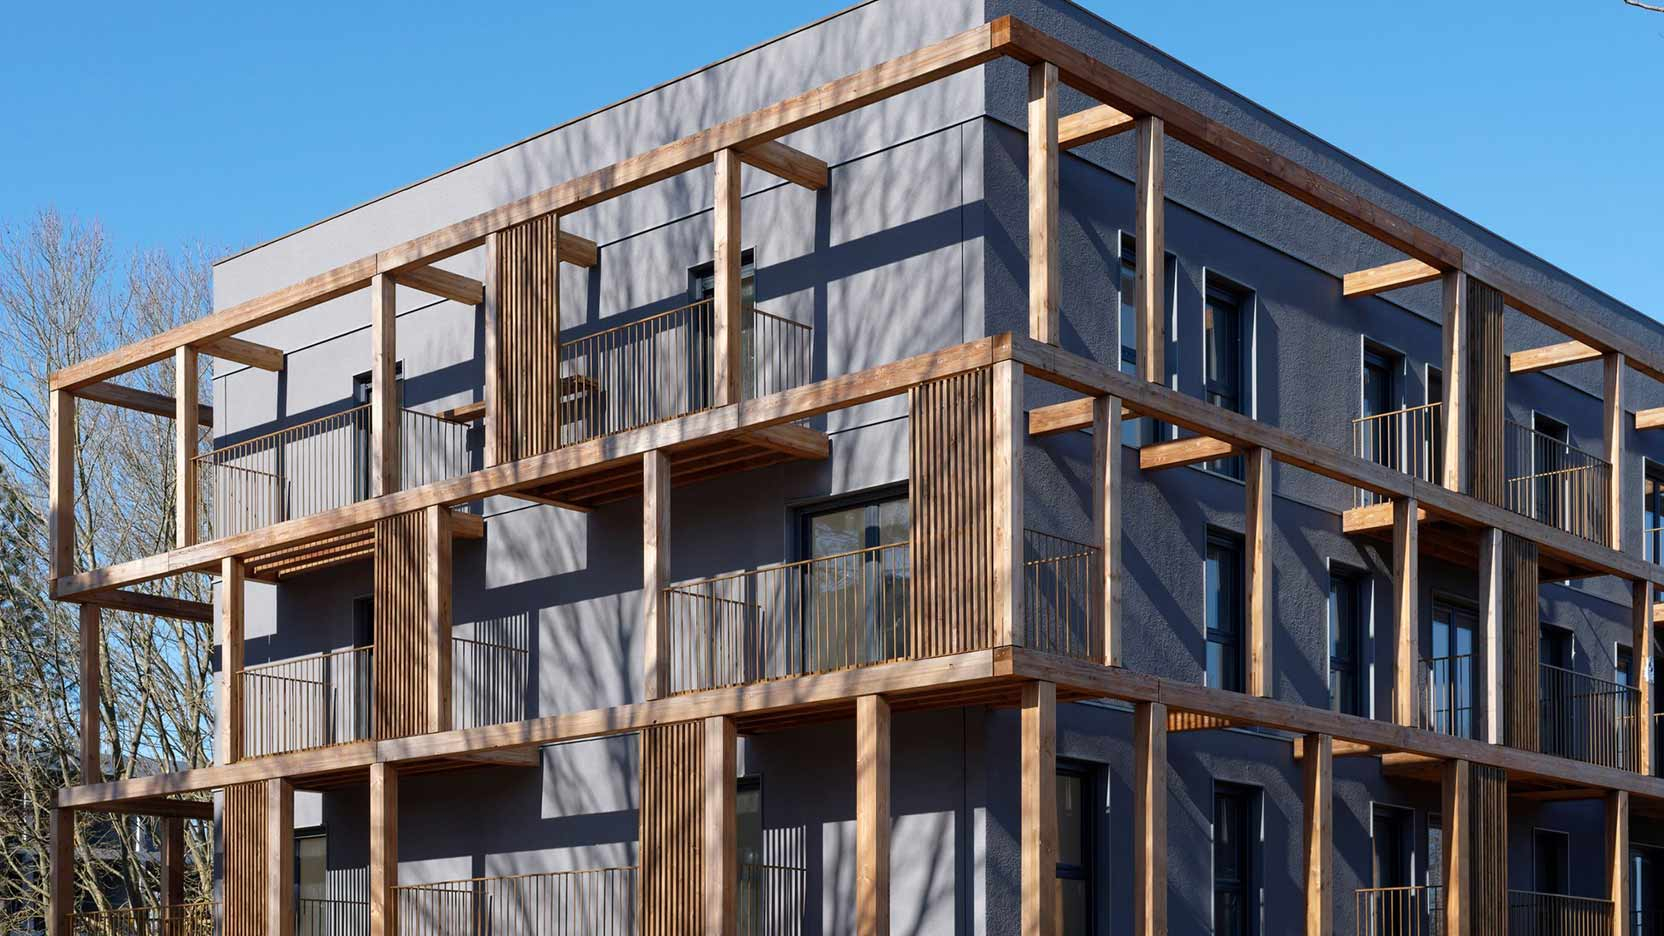 Après l’habillage d’un 1er bâtiment, nous débutons la pose des façades bois d’un second bâtiment à Torcy